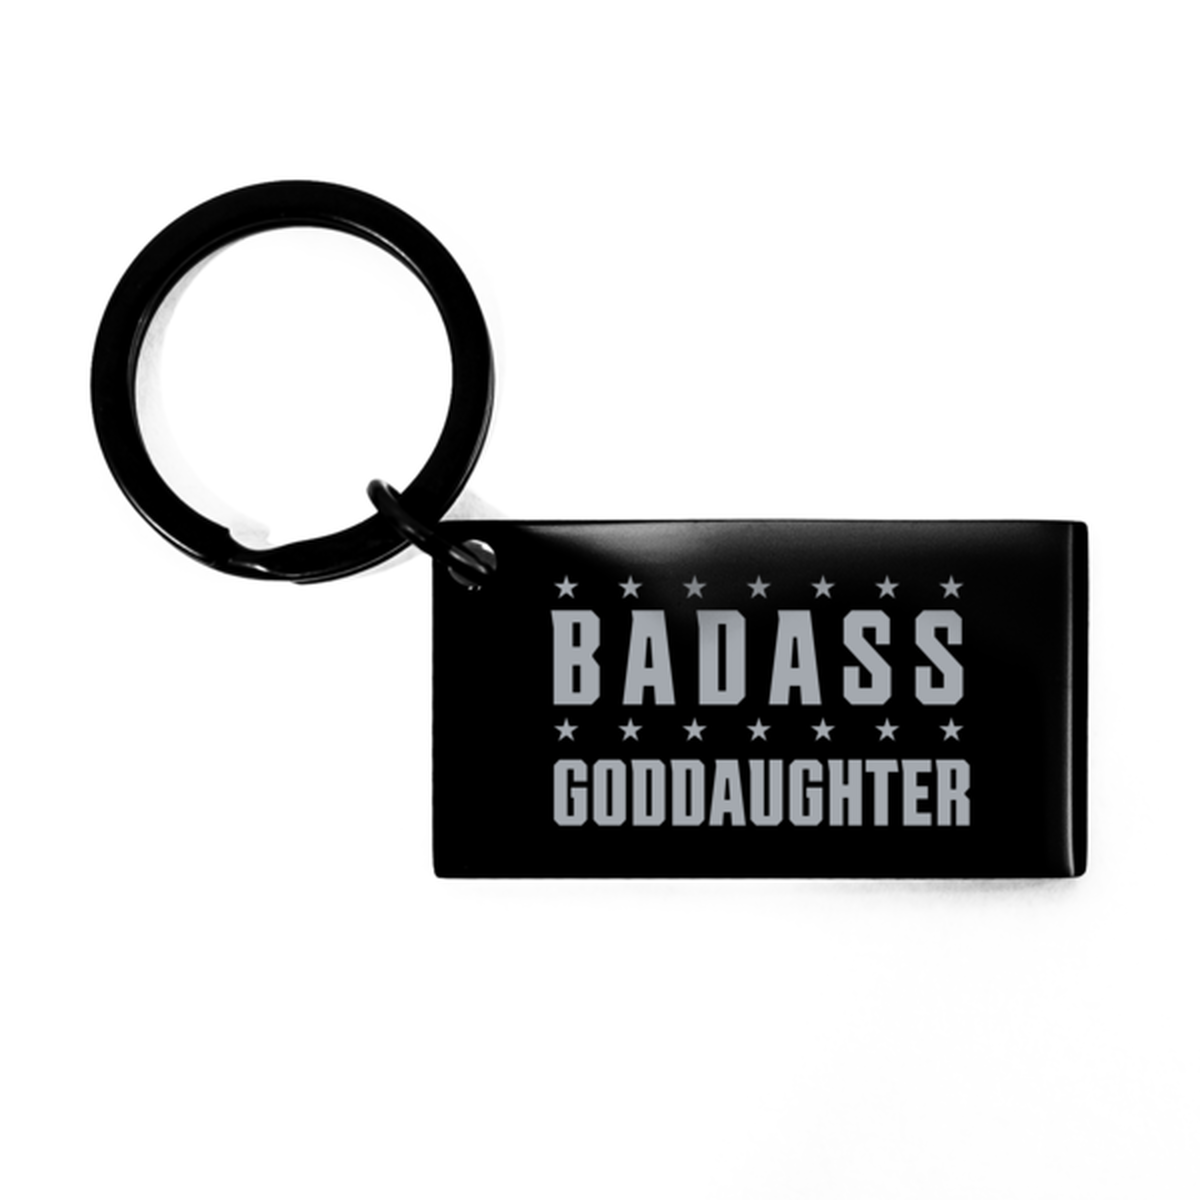 Goddaughter Black Keychain, Badass Goddaughter, Funny Family Gifts  Keyring For Goddaughter From Godparent